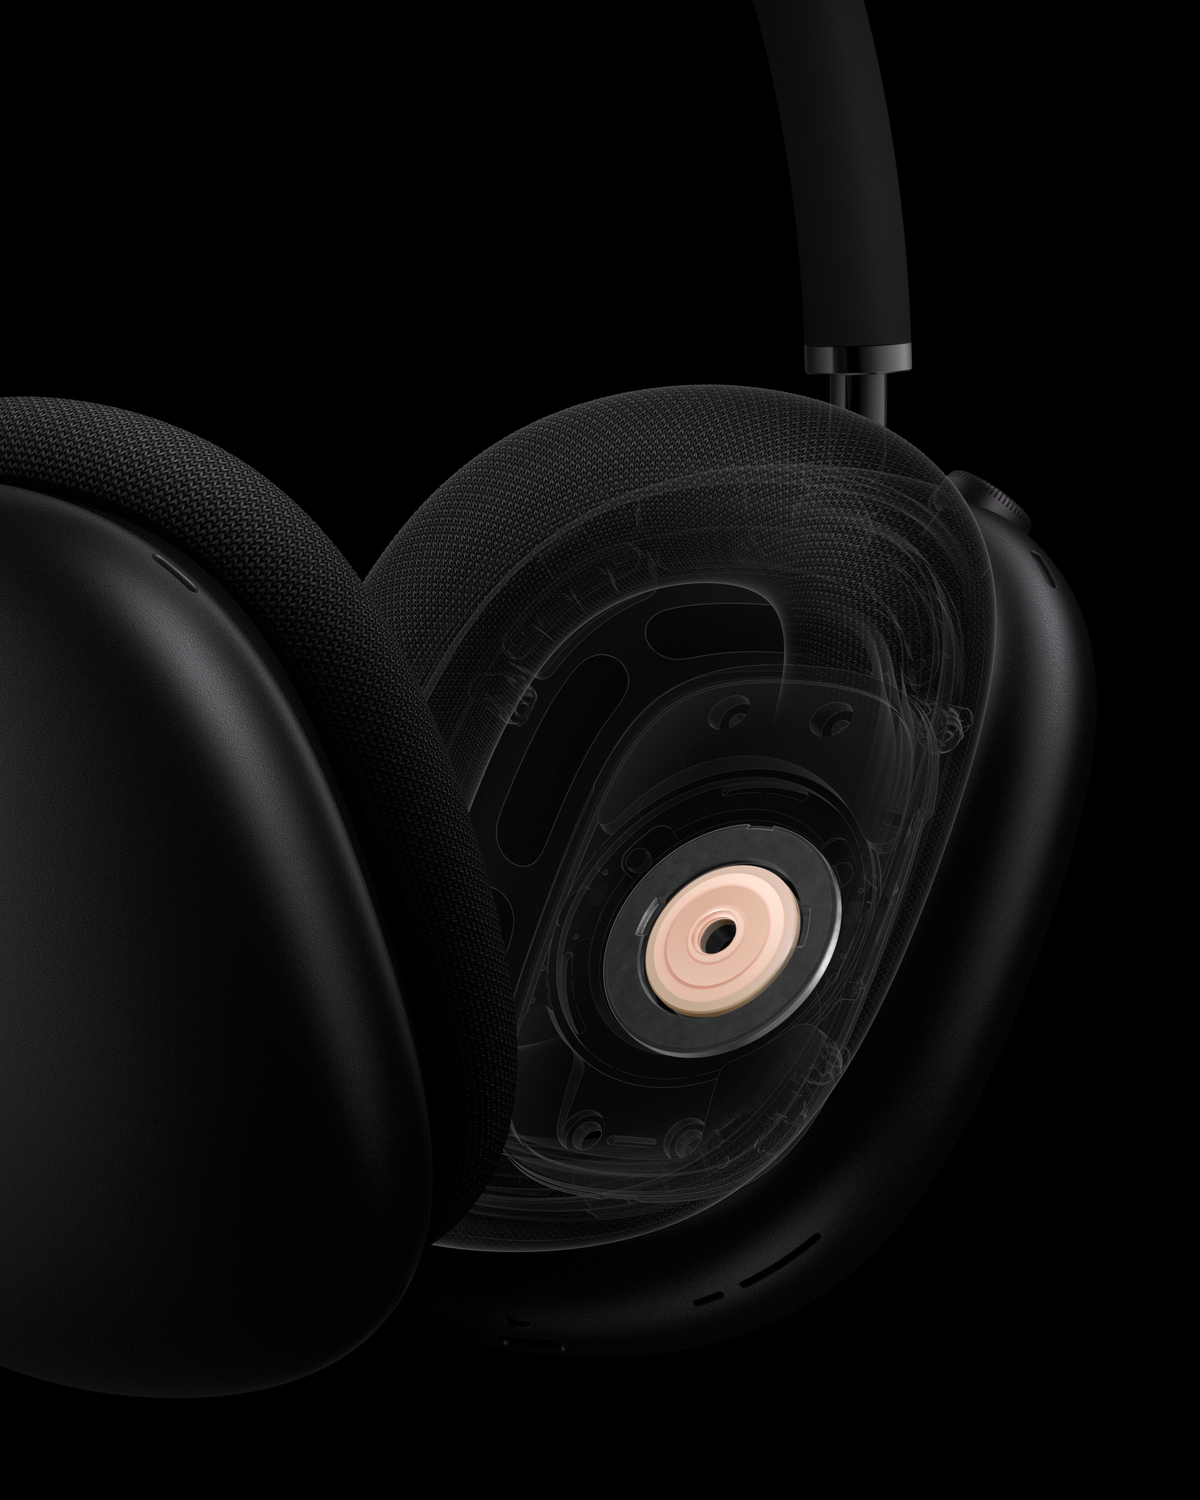 Apple AirPods Max kulak üstü ve gürültü engellemeli kulaklık tanıtıldı